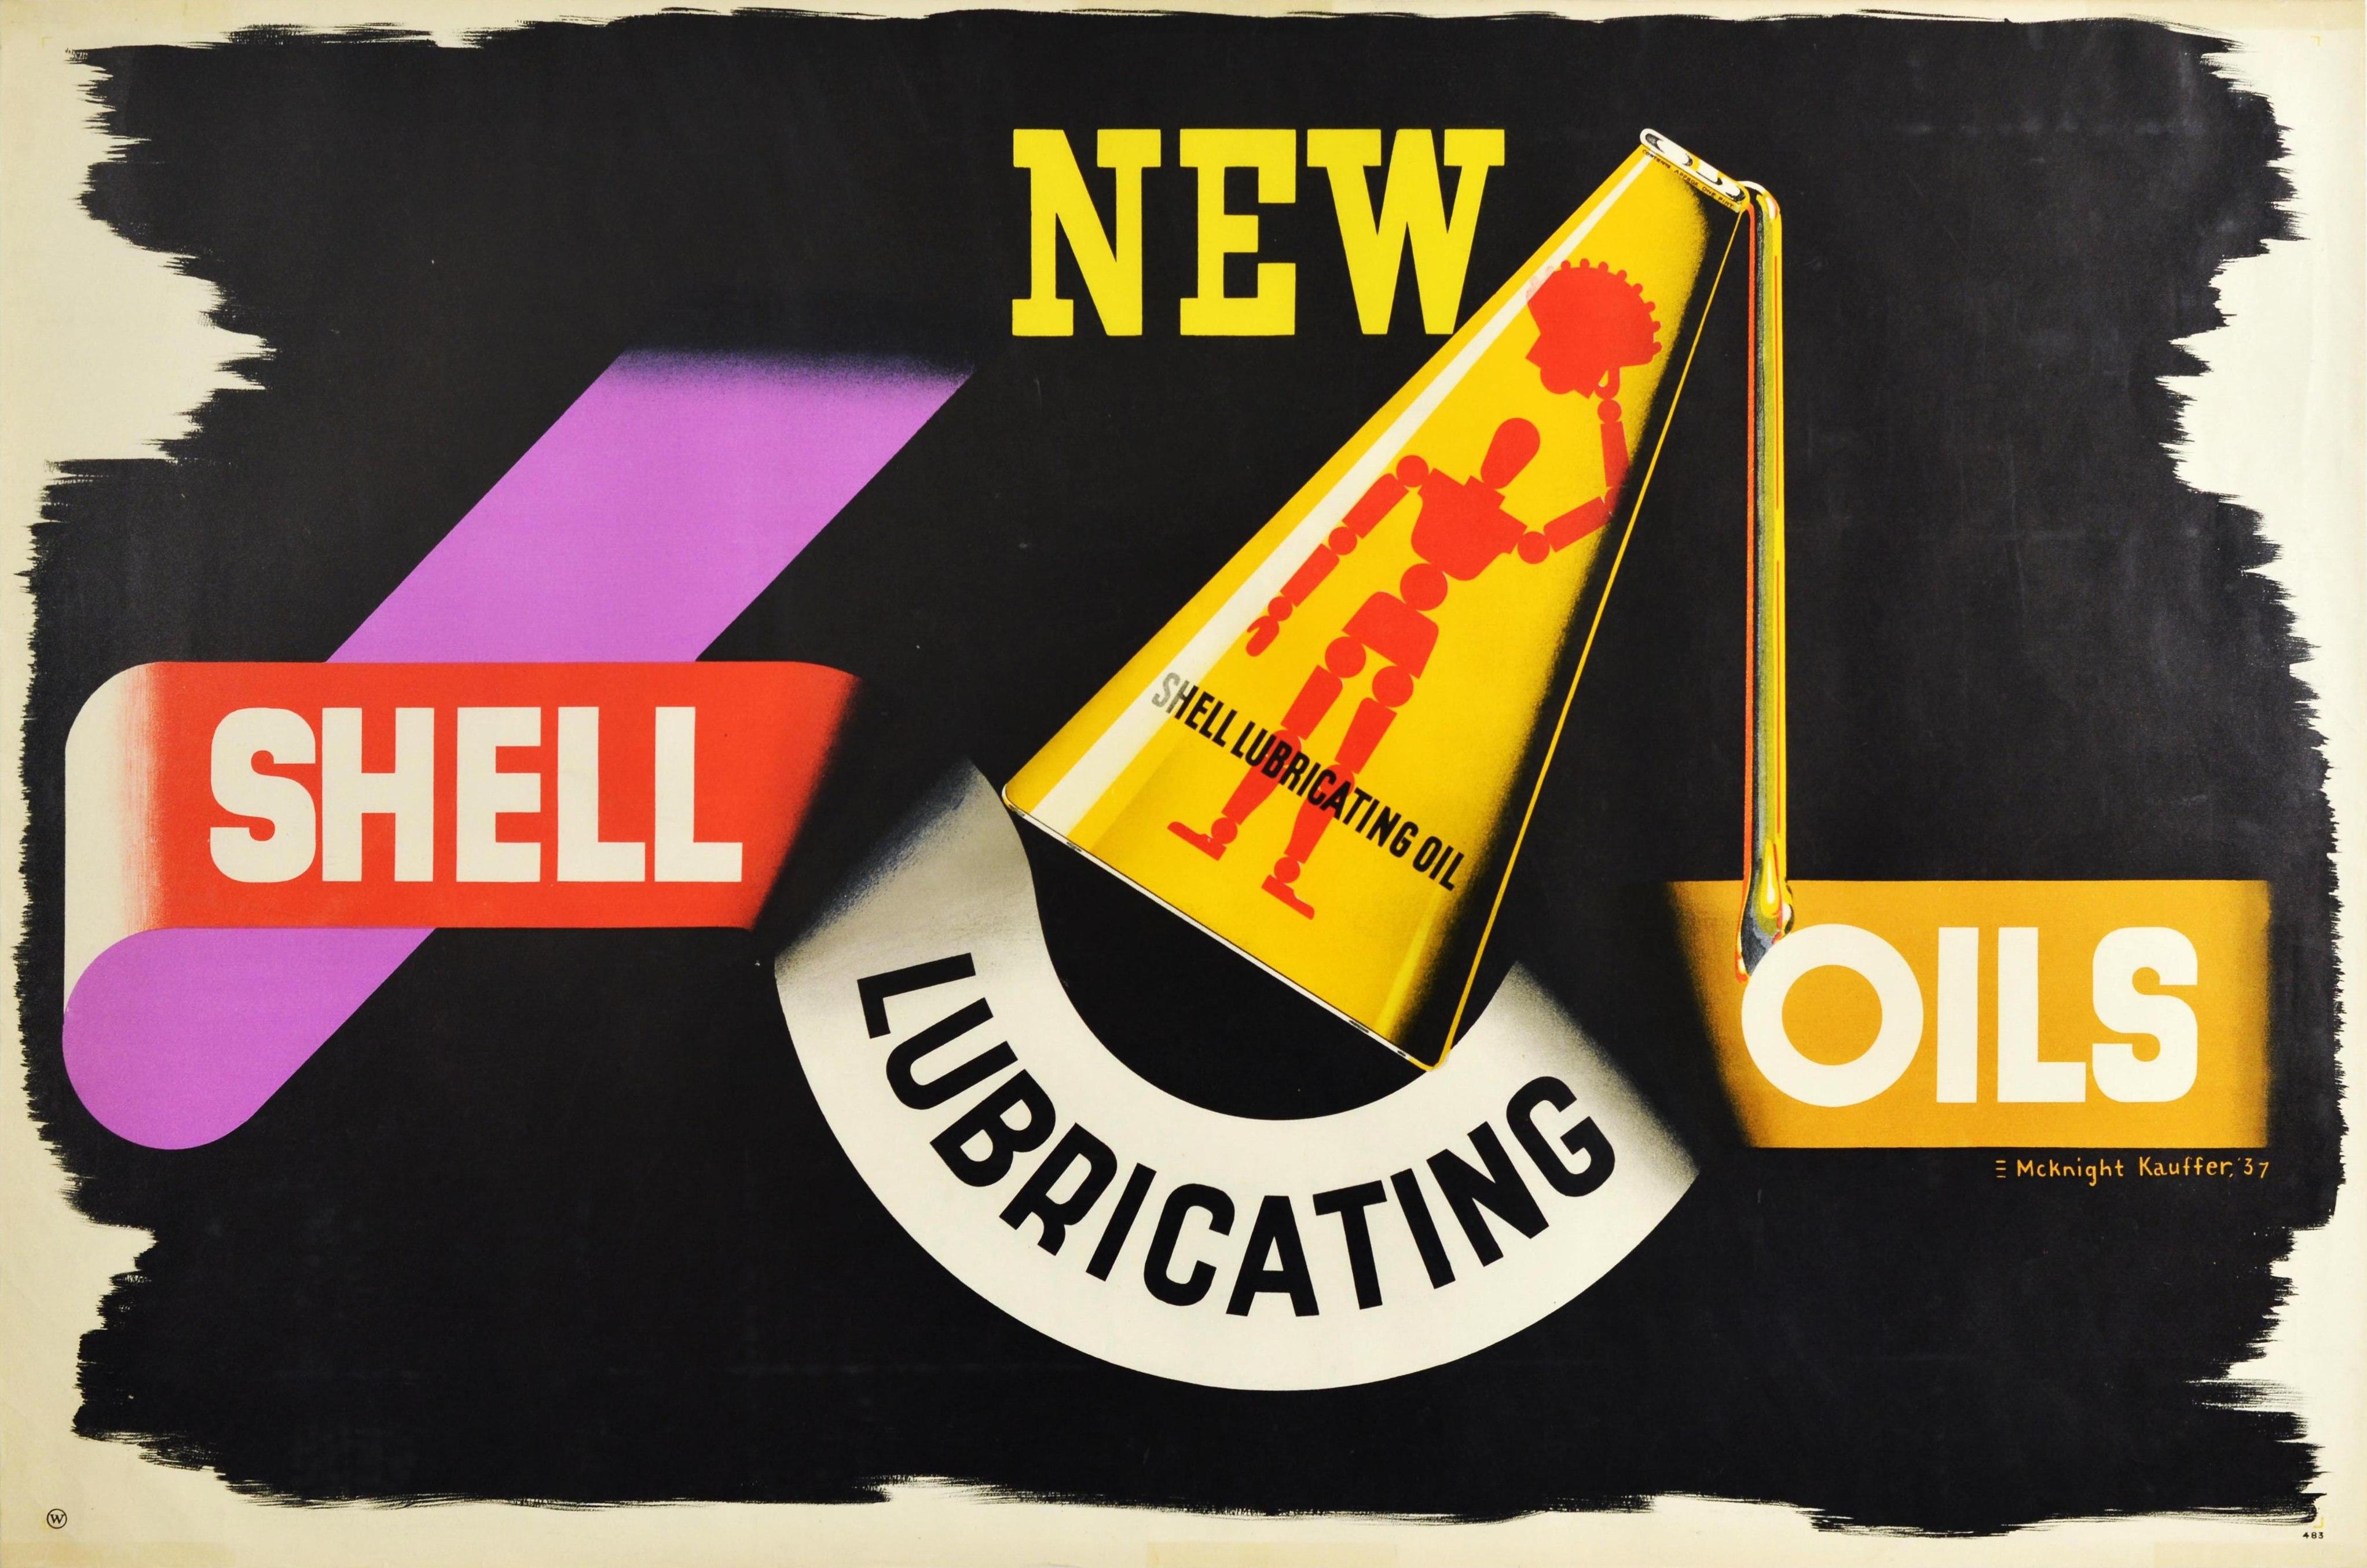 Original-Werbeplakat für Shell-Schmieröle, entworfen von einem der bekanntesten Plakatkünstler des 20. Jahrhunderts, Edward McKnight Kauffer (1890-1954). Das auffällige Design zeigt eine gelbe Shell-Motoröl-Dose mit einer gelenkigen Künstlerpuppe,